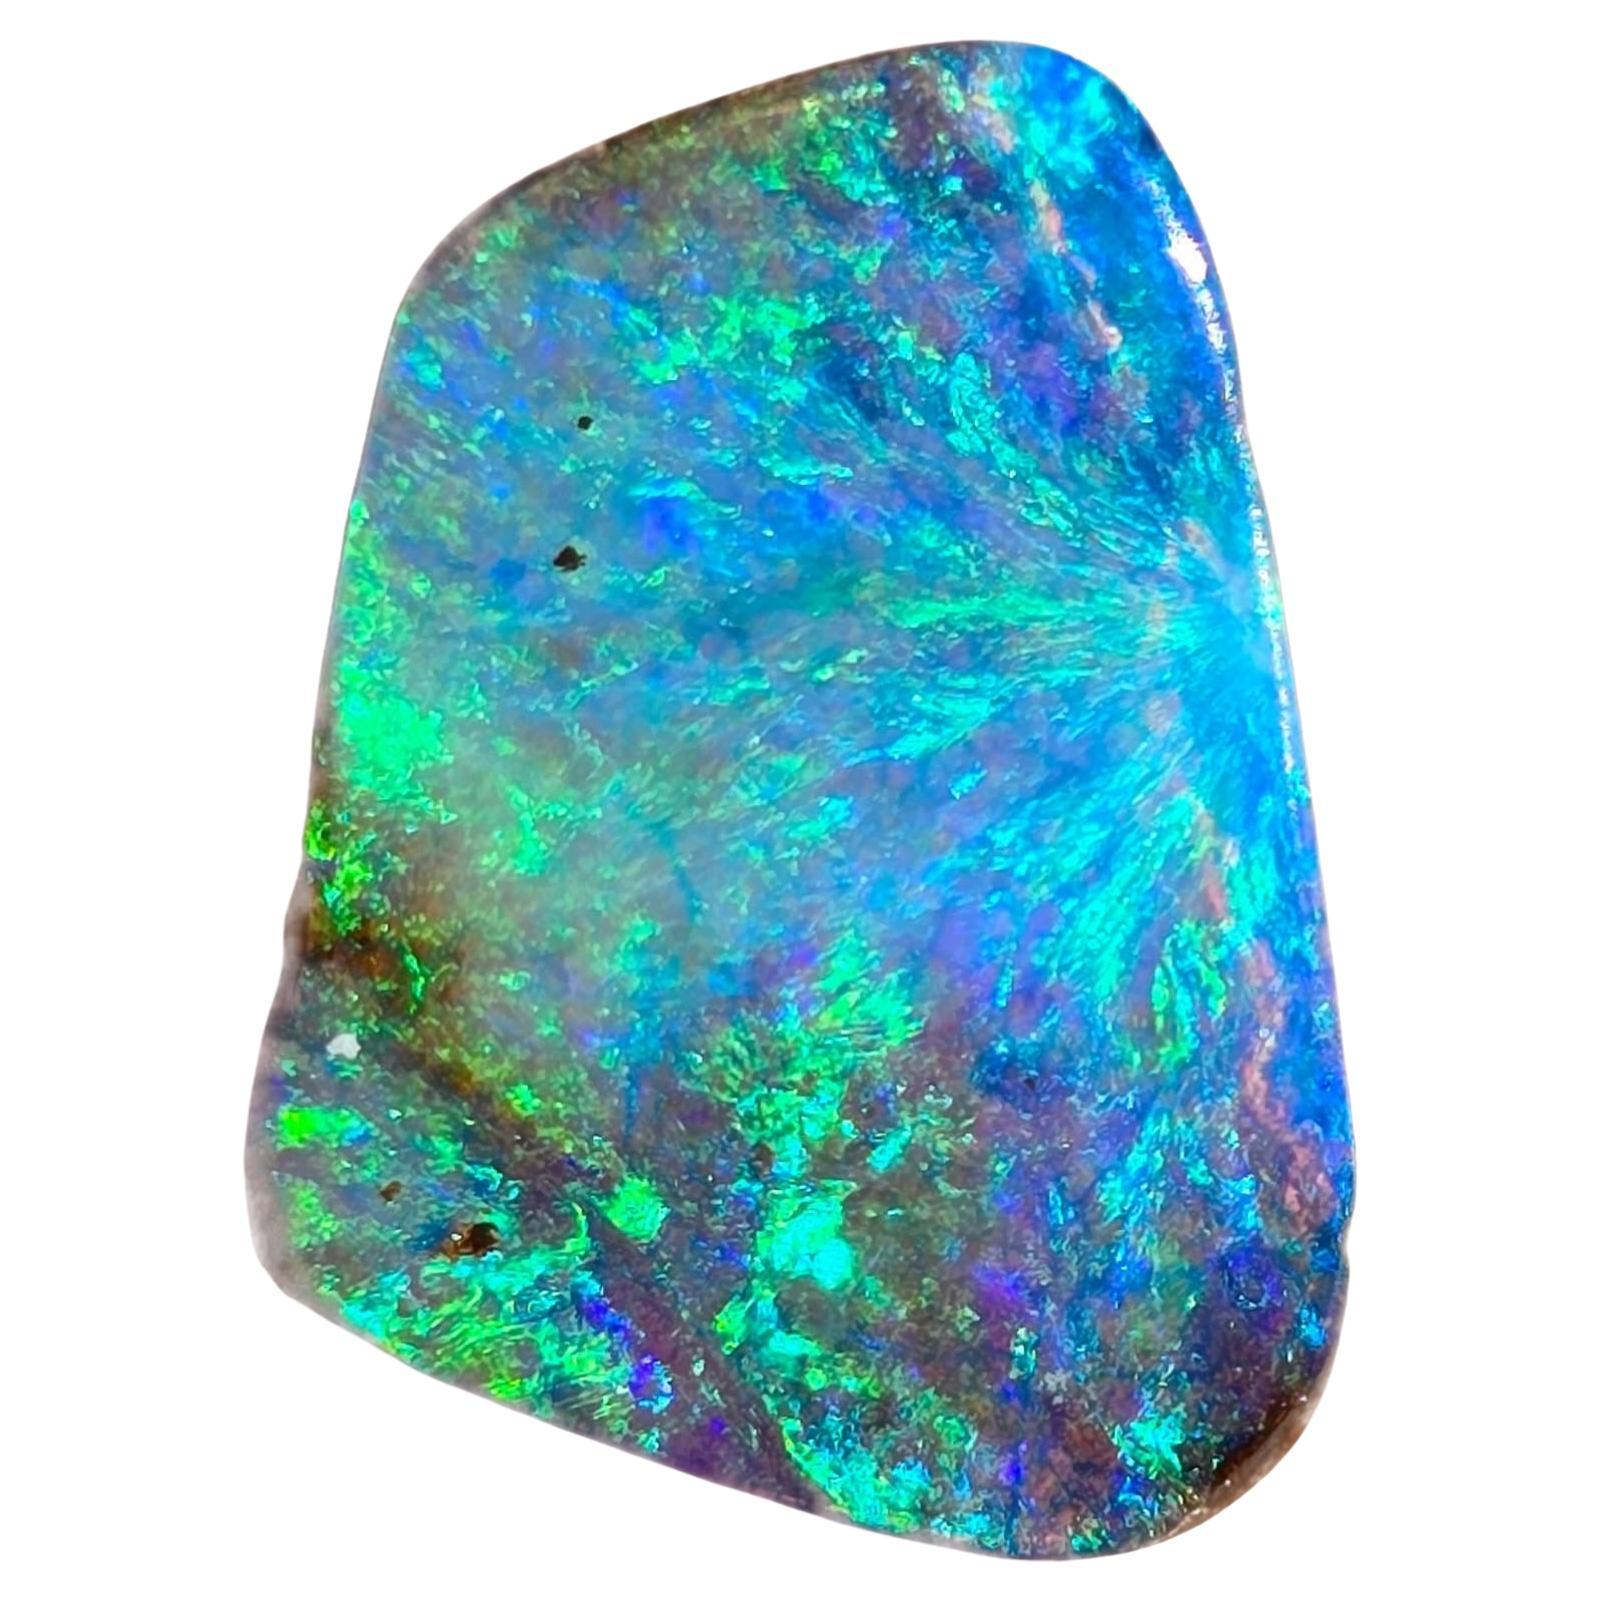 Opale rocheuse australienne de 4.98 ct extraite par Sue Cooper